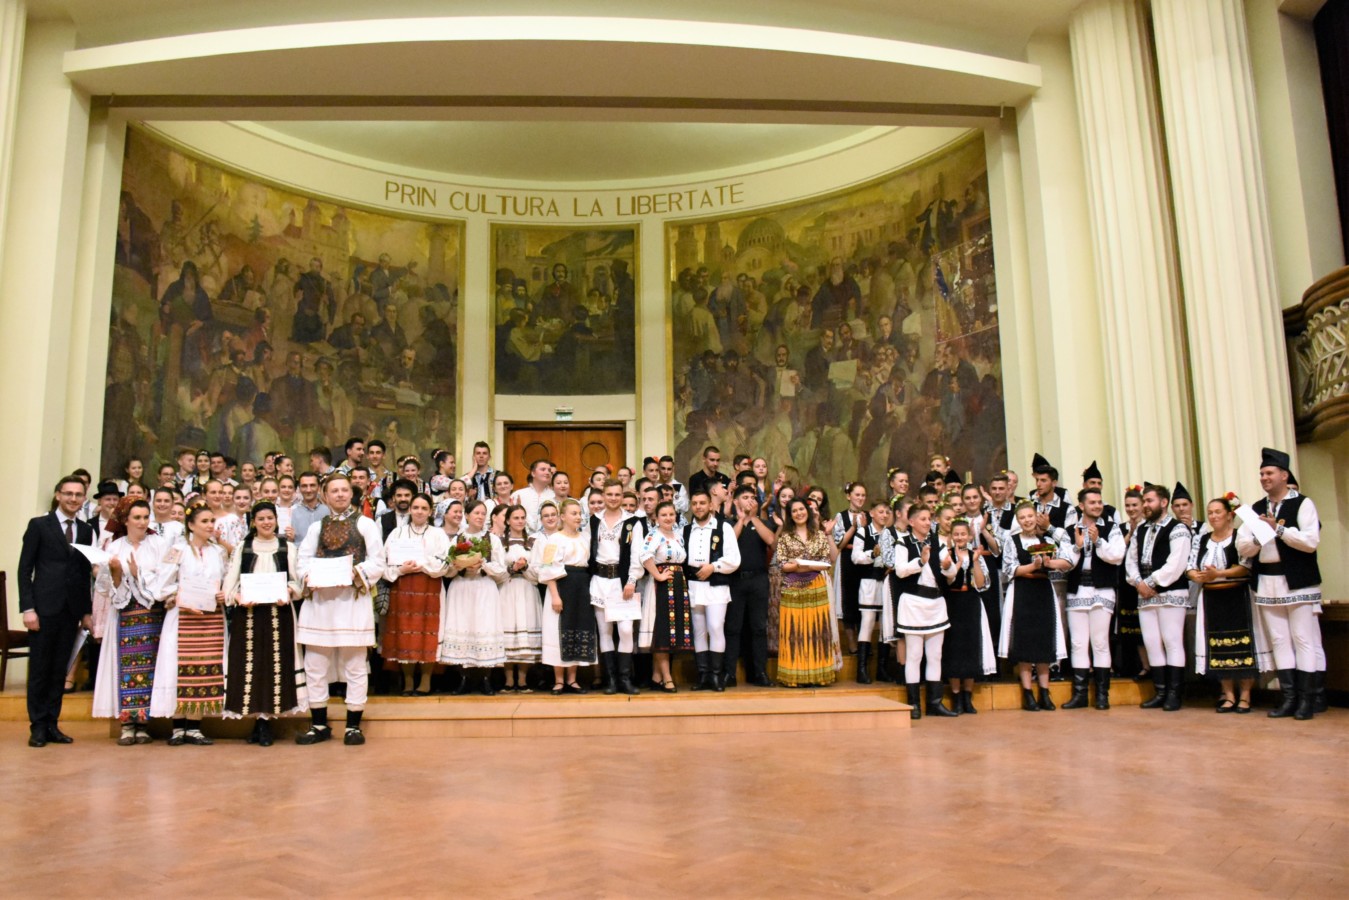 Studenții UBB au organizat un Spectacol Intercultural cu ocazia împlinirii a 100 de ani de Universitate românească la Cluj-Napoca